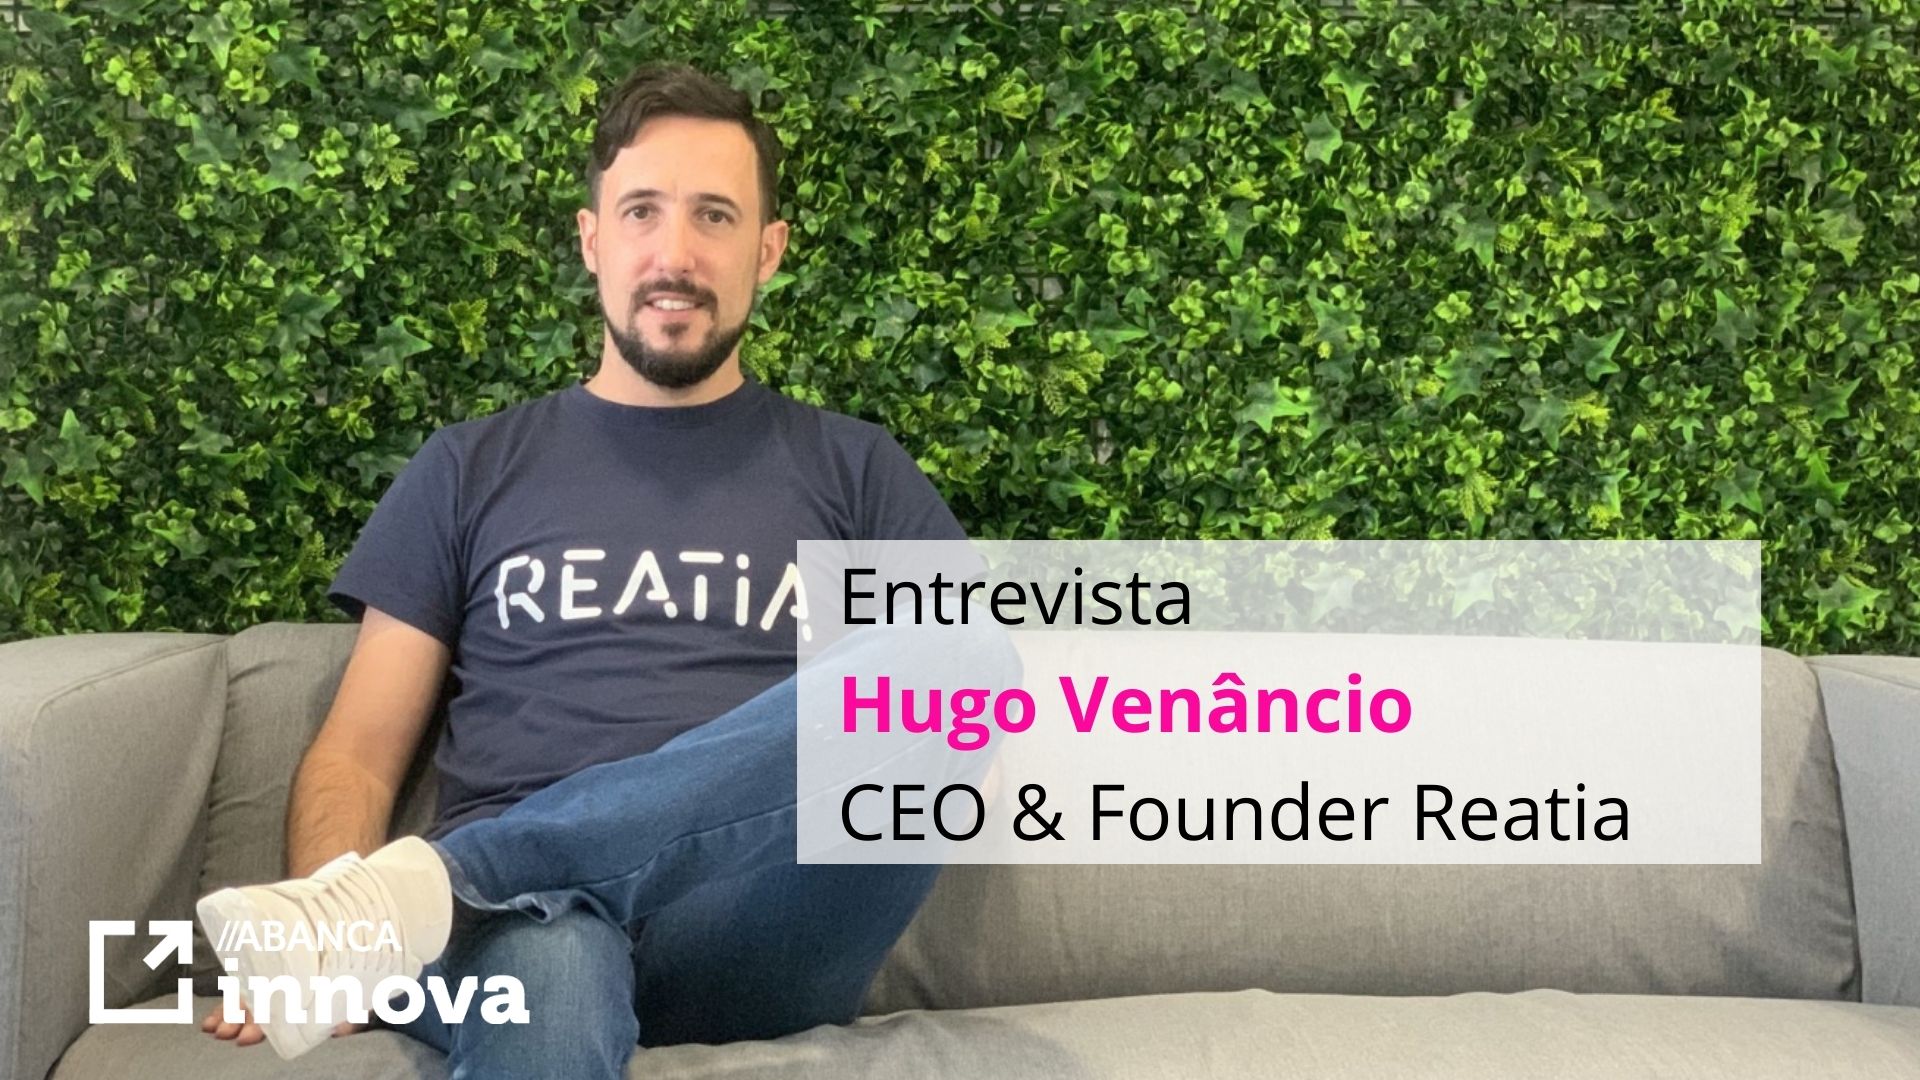 Entrevista a Hugo Venâncio, CEO & Founder de REATIA, startup que ha realizado una PoC con ABANCA